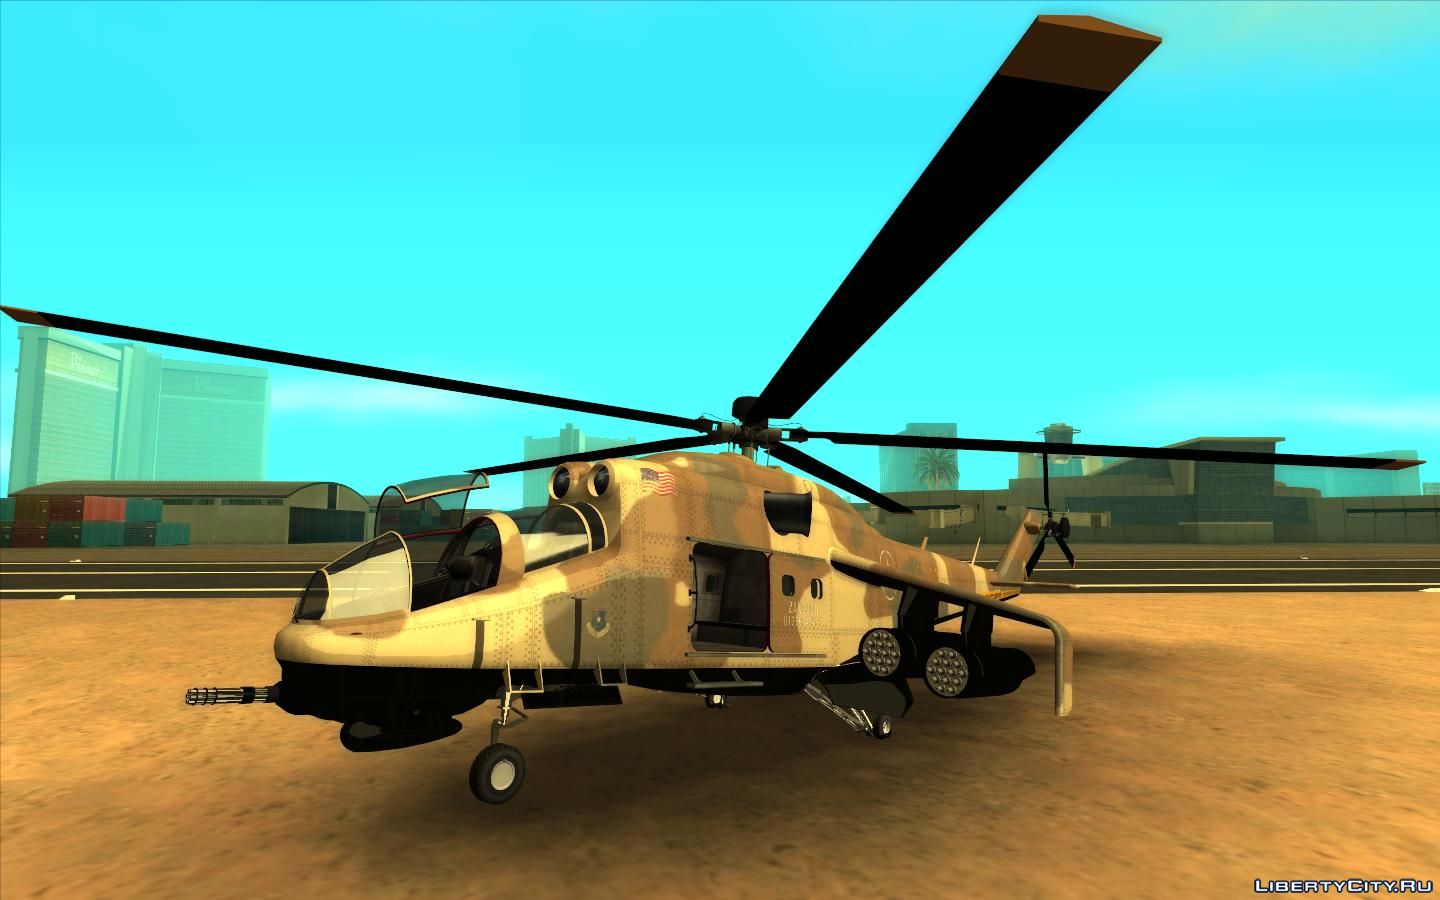 Гта мод вертолет. GTA 5 вертолет. ГТА Сан андреас вертолет Хантер. Вертолеты Hunter для ГТА Сан андреас. Вертолет ка 50 для ГТА са.